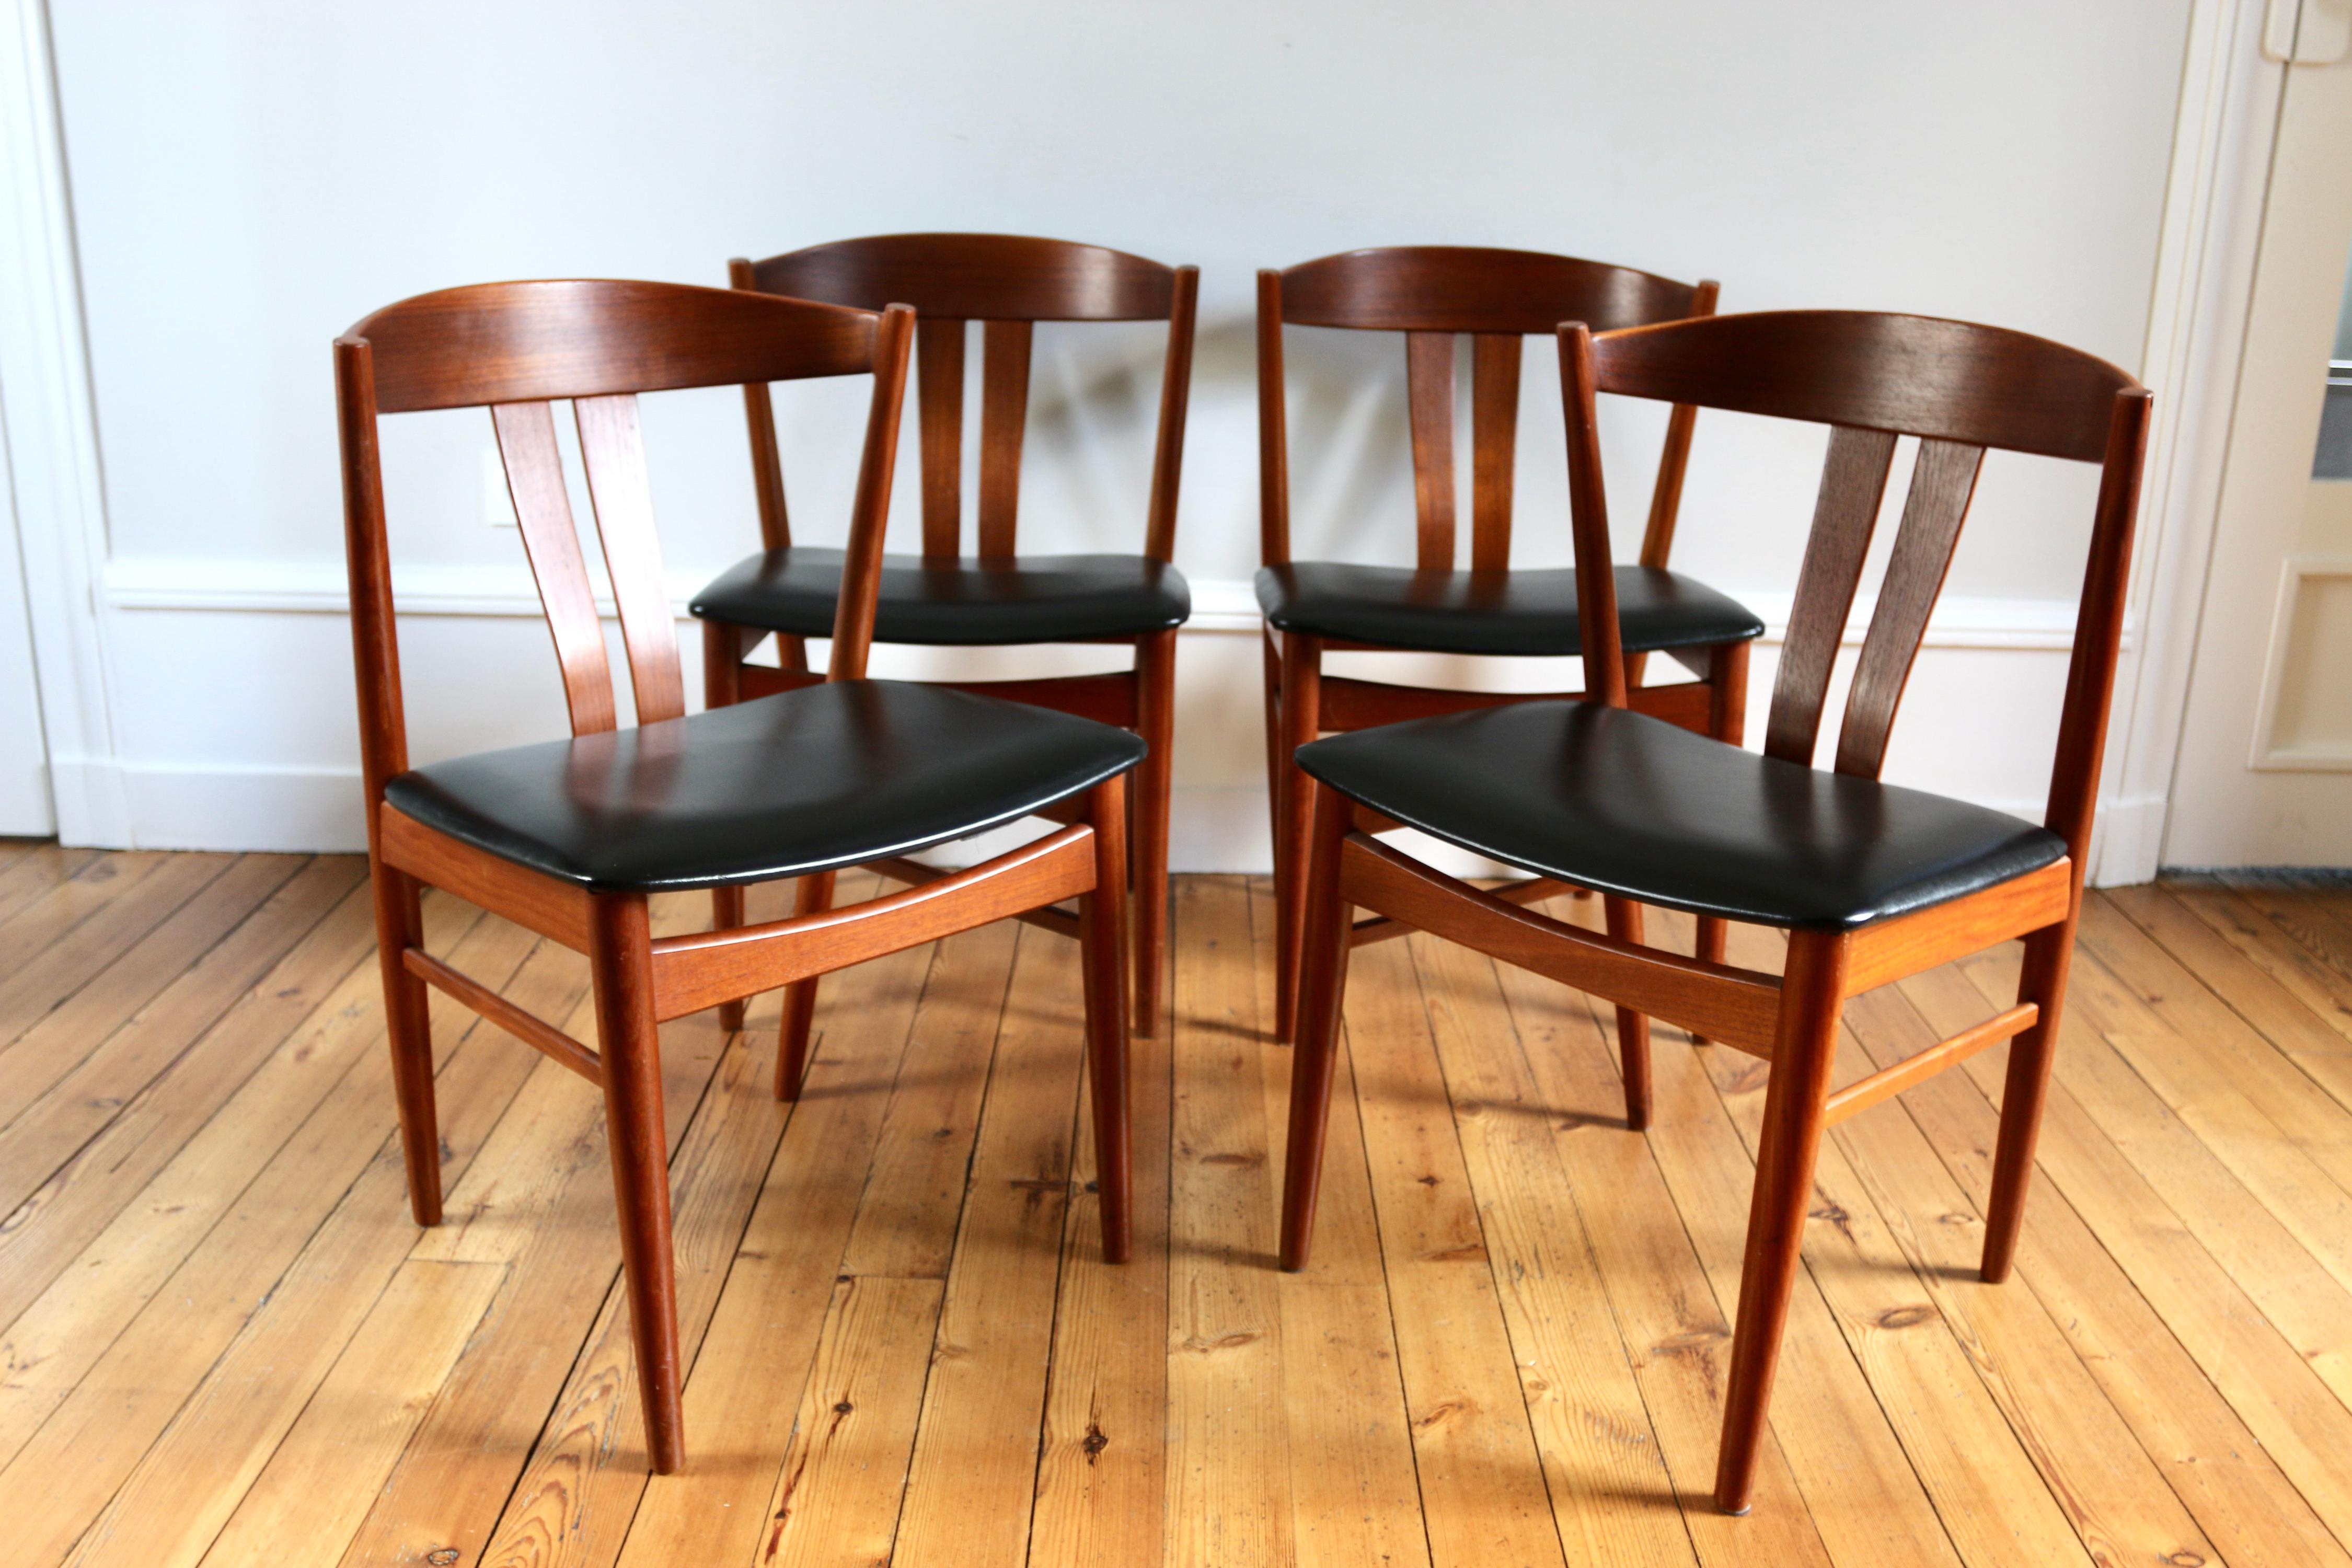 Série de 4 chaises danoises en teck, vraisemblablement un modèle Jysk Mobelfabrik
en bon état, seul à noter une petite réparation dans le simili cuir sur la tranche d'une chaise et le rebouchage d'un petit trou sur un montant

vente a l'unité